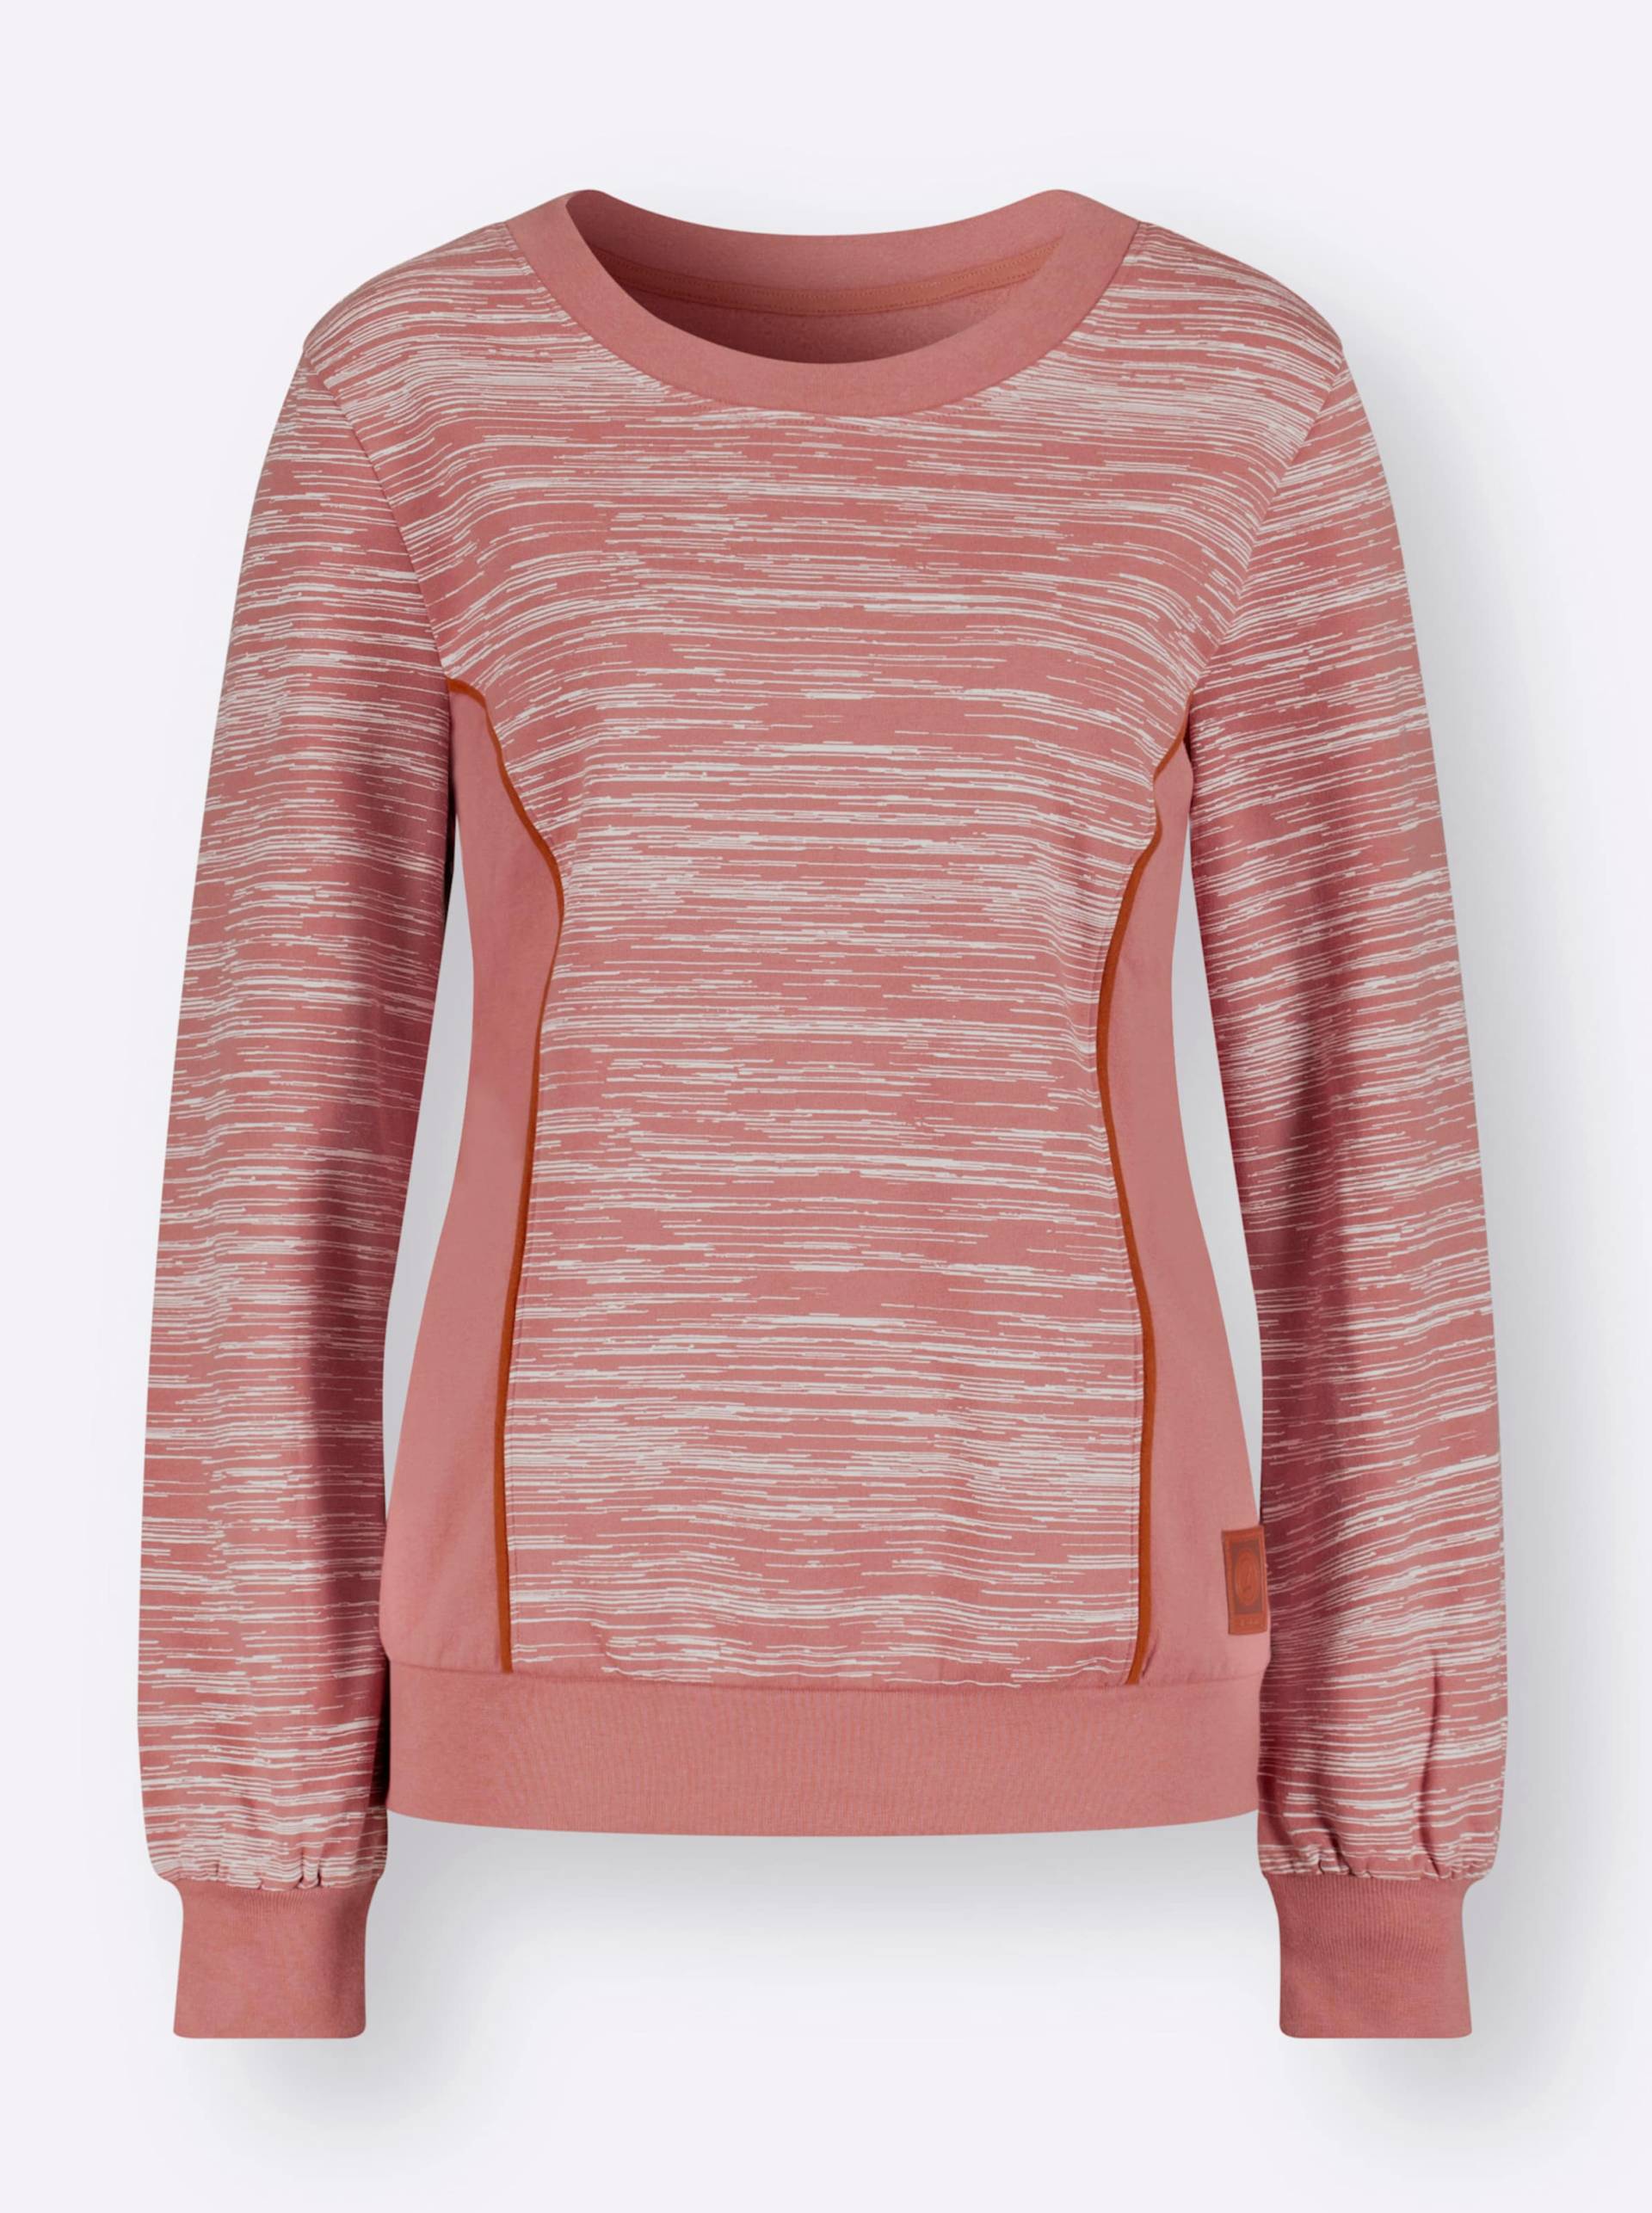 Sweatshirt in rosenholz-ecru-bedruckt von heine von heine